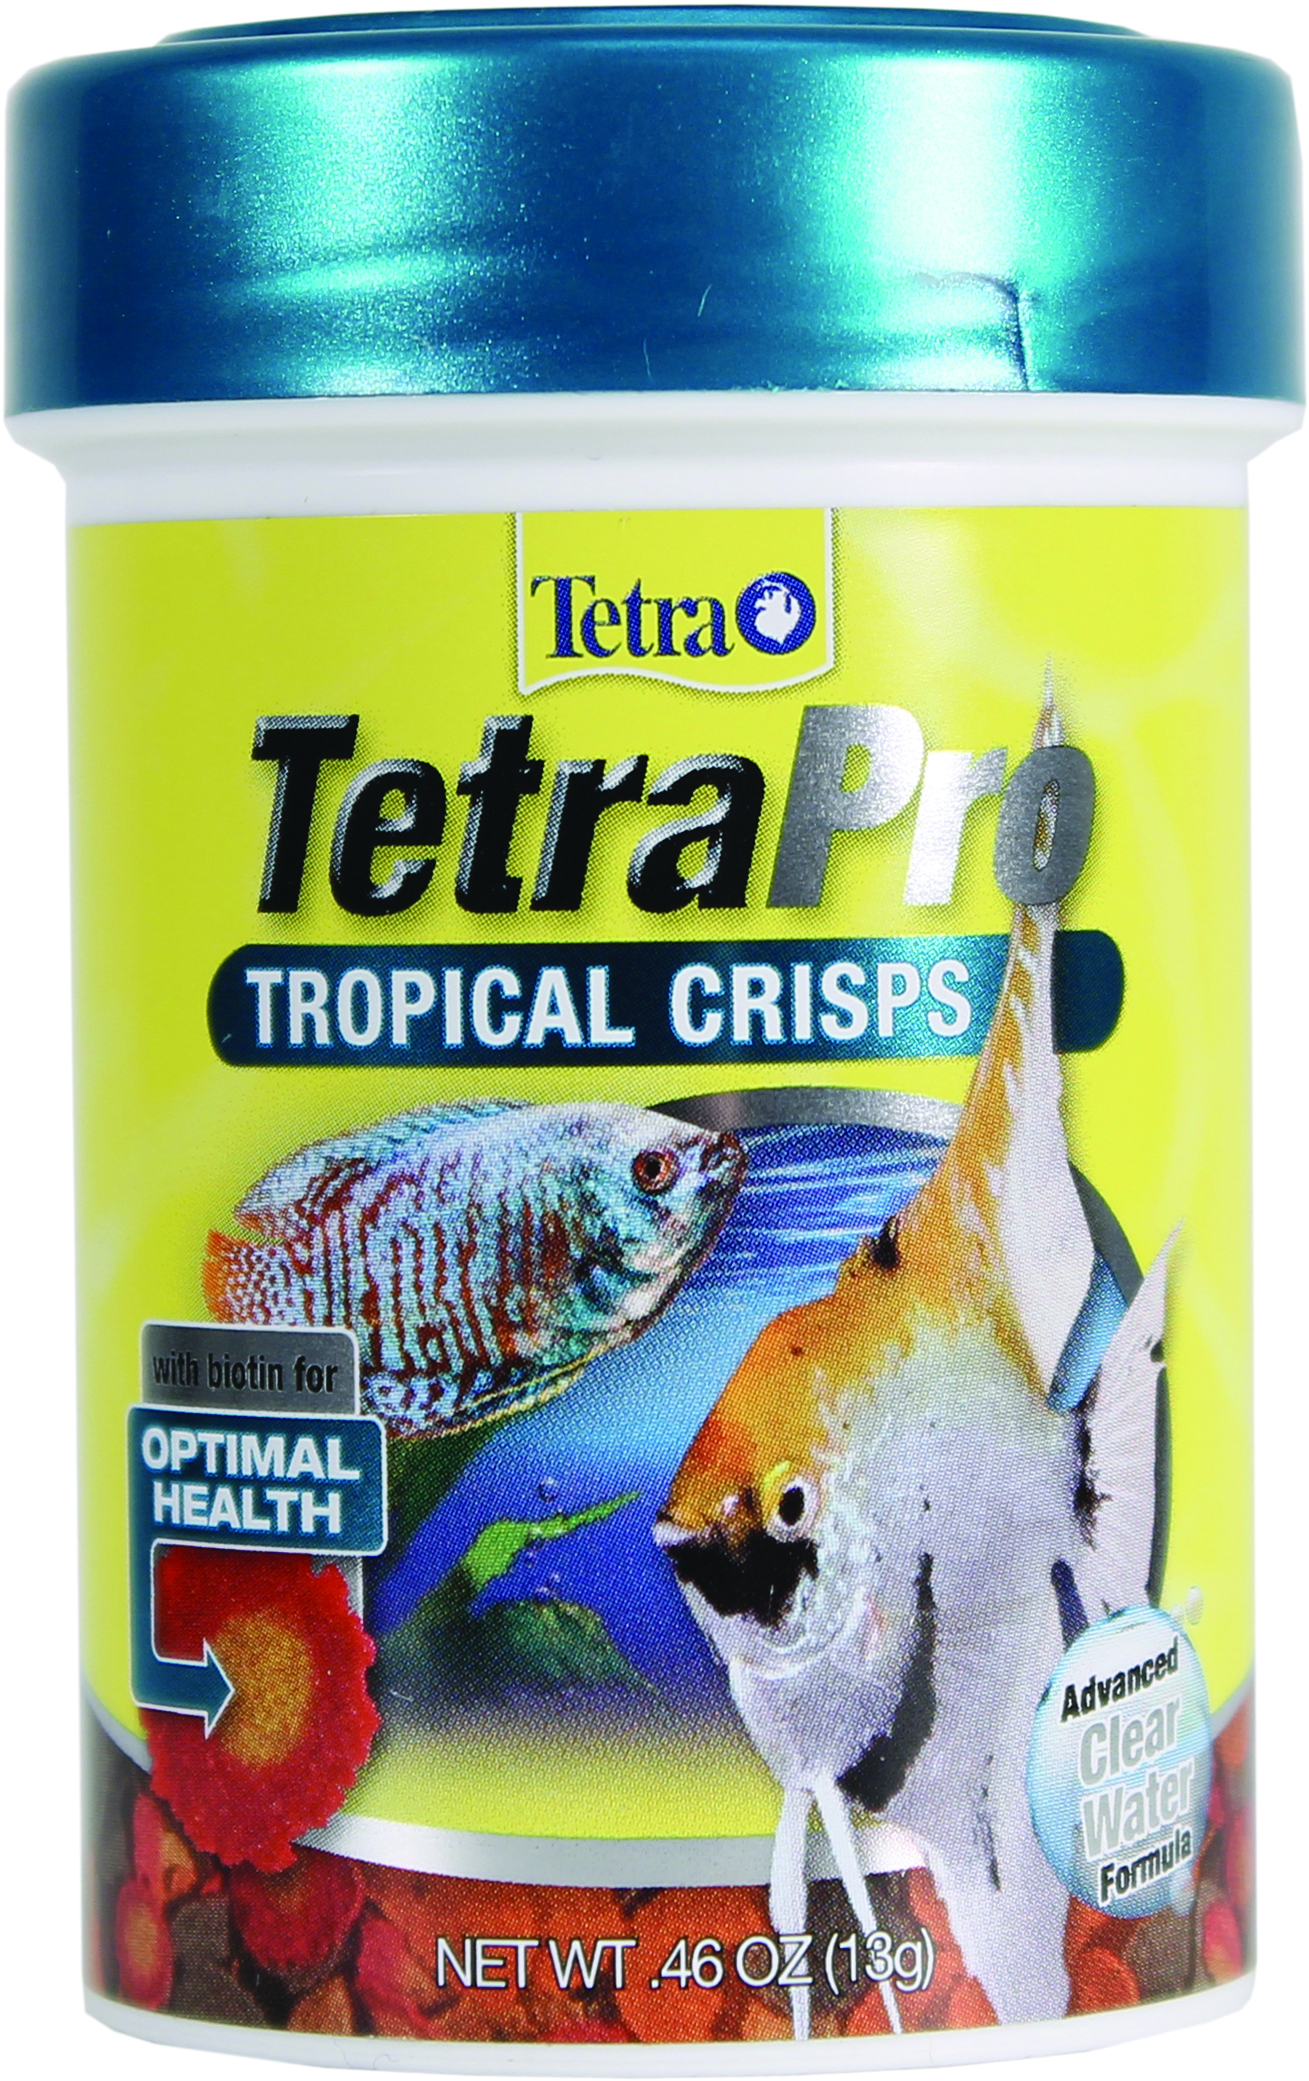 TETRAPRO TROPICAL CRISPS